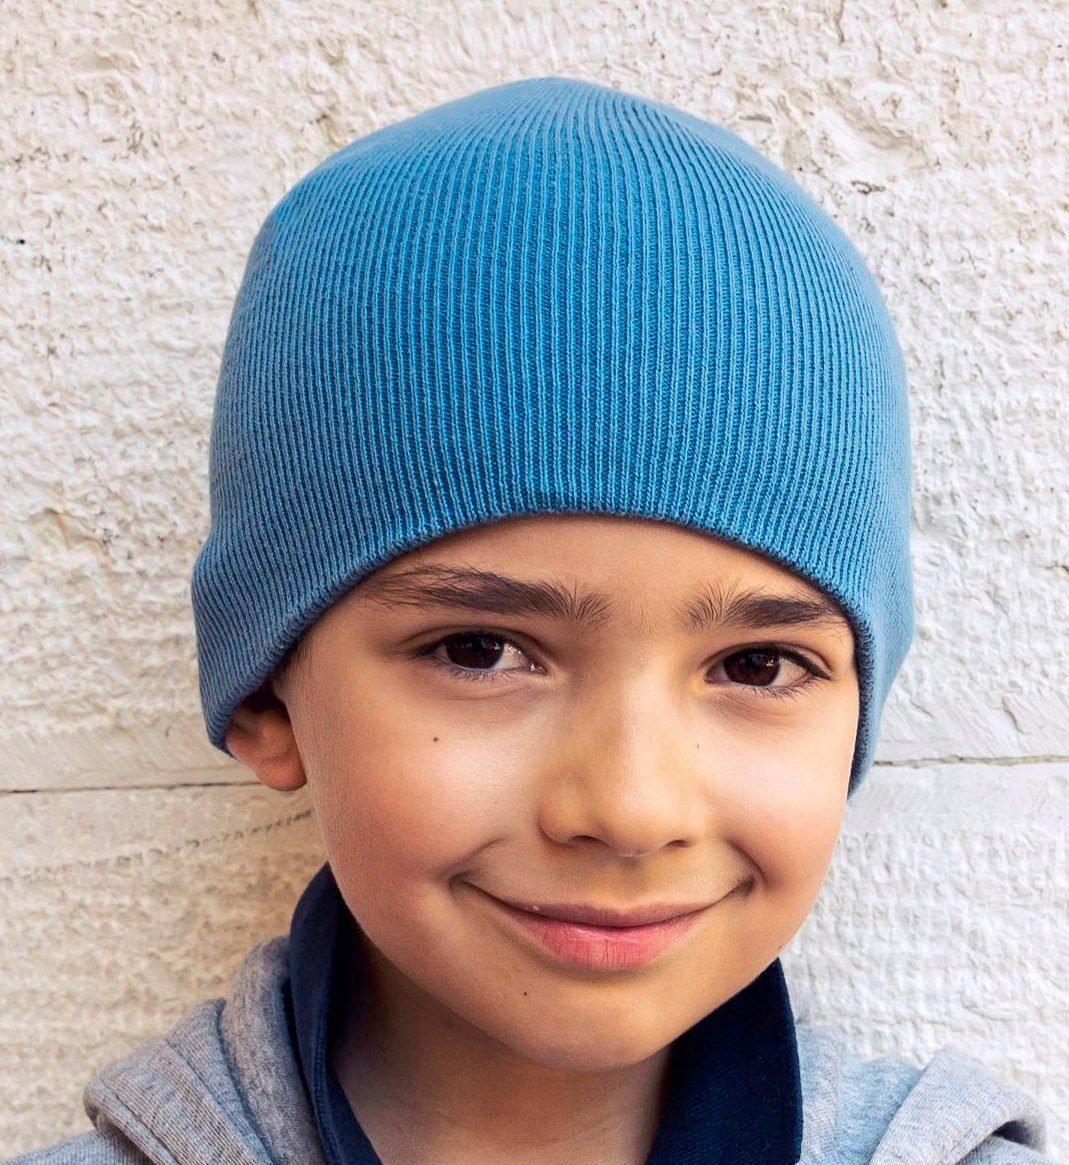 Atlantis Beanie Kinder Mütze / Wintermütze für Mädchen und Jungen aus Bio-Baumwolle verschiedene Farben Hellblau